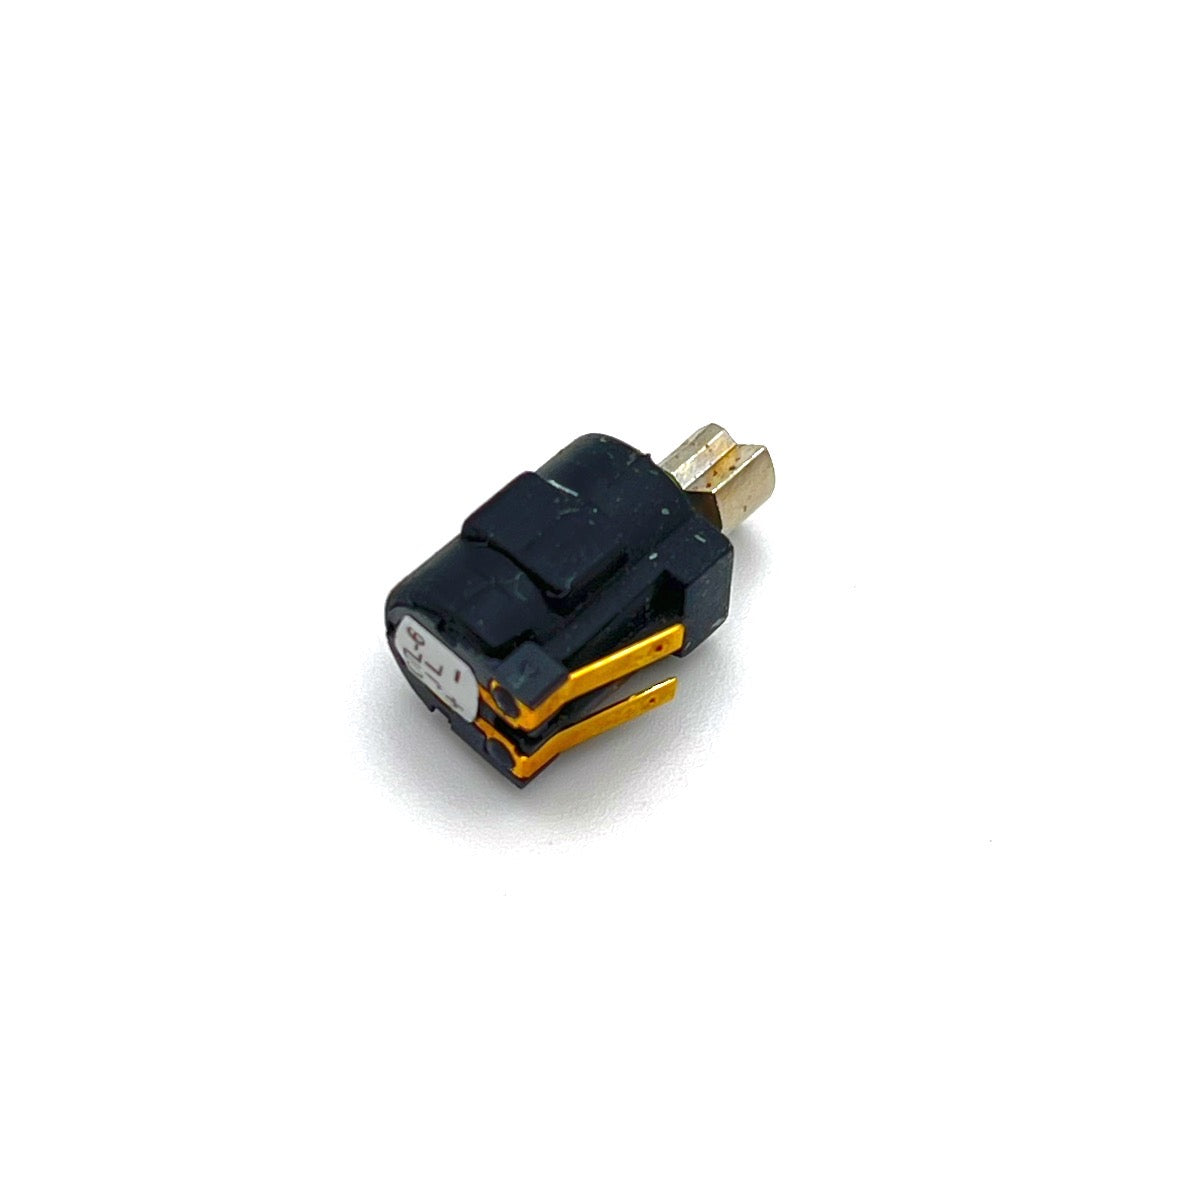 Vibrator for Iridium 9555   genuine part repair